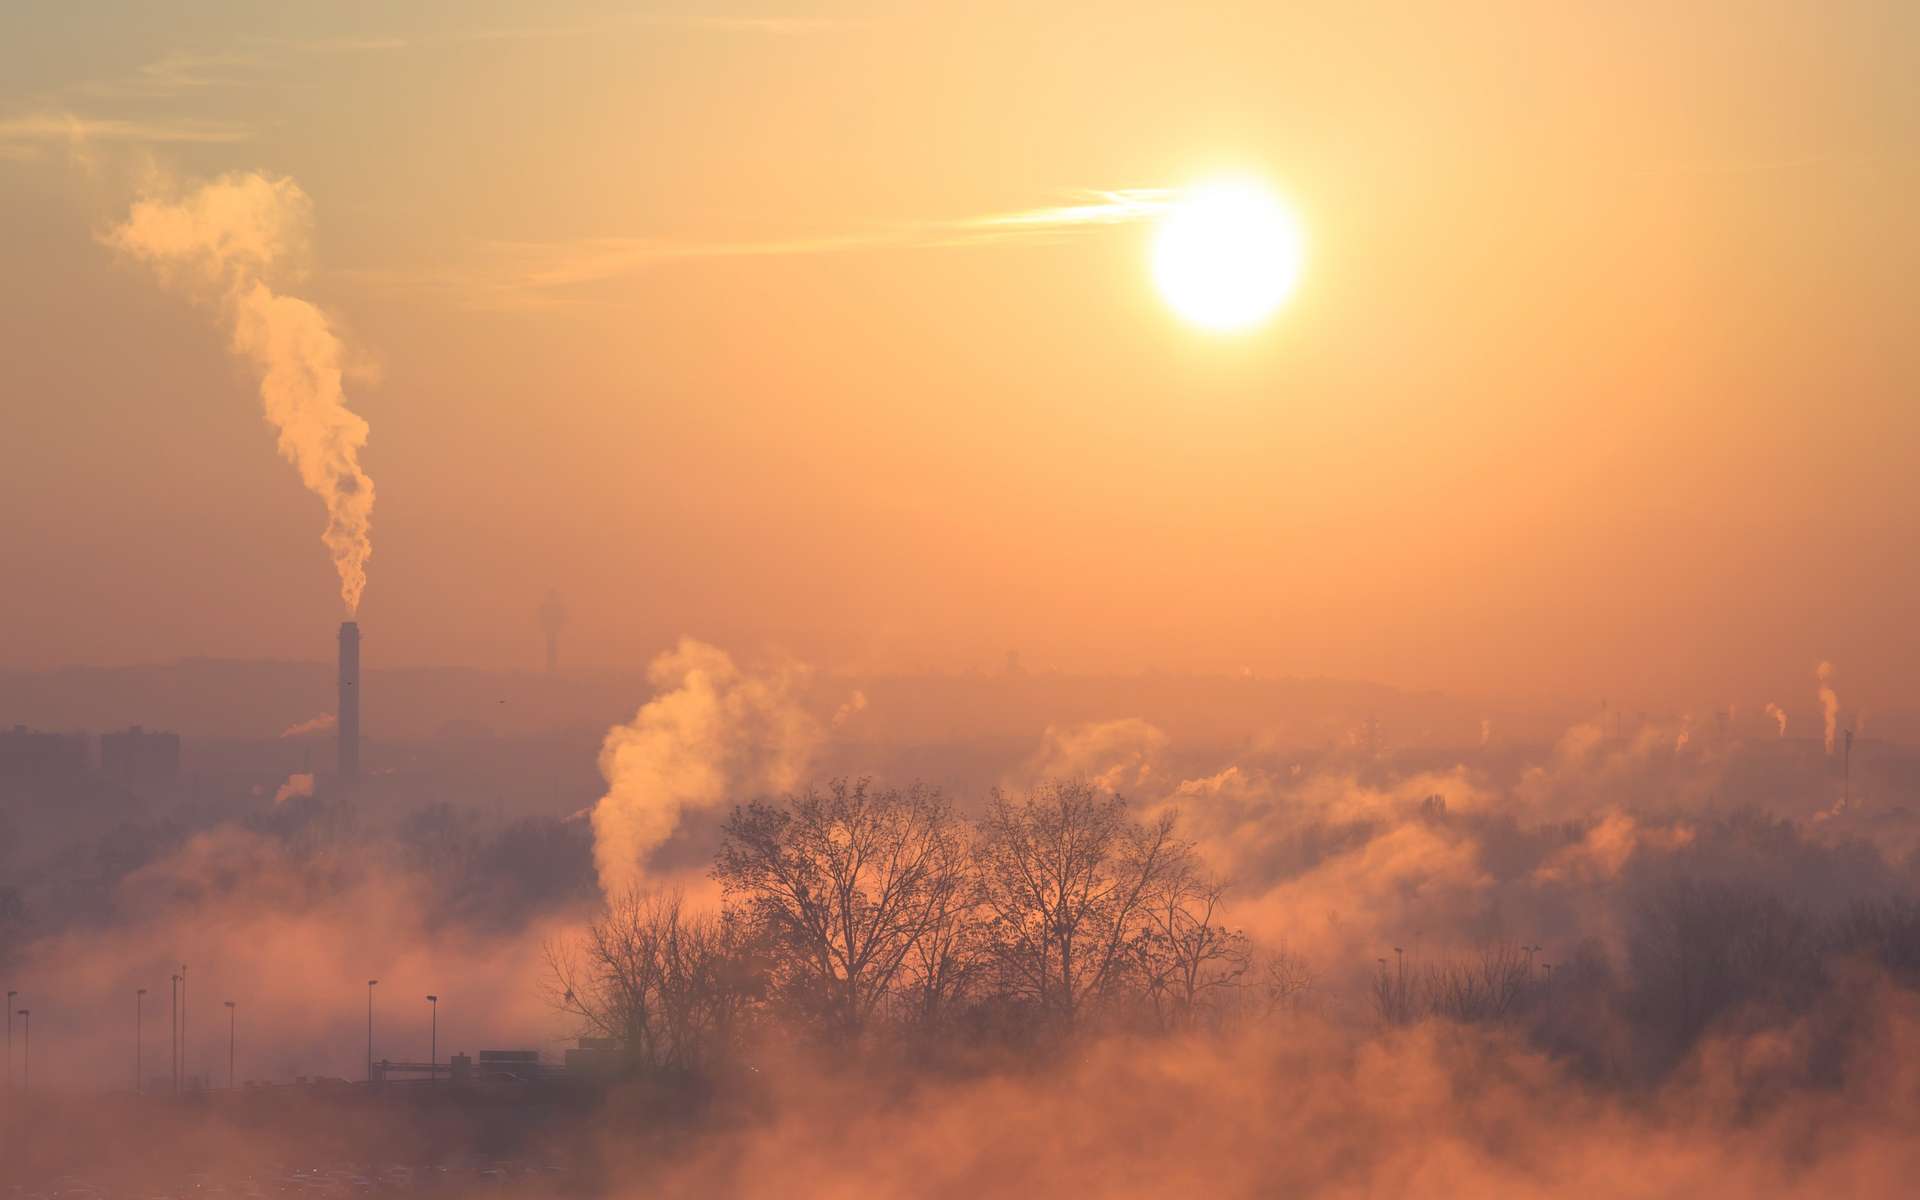 Une étude pointe les principaux responsables de la pollution de l'air meurtrière en Europe